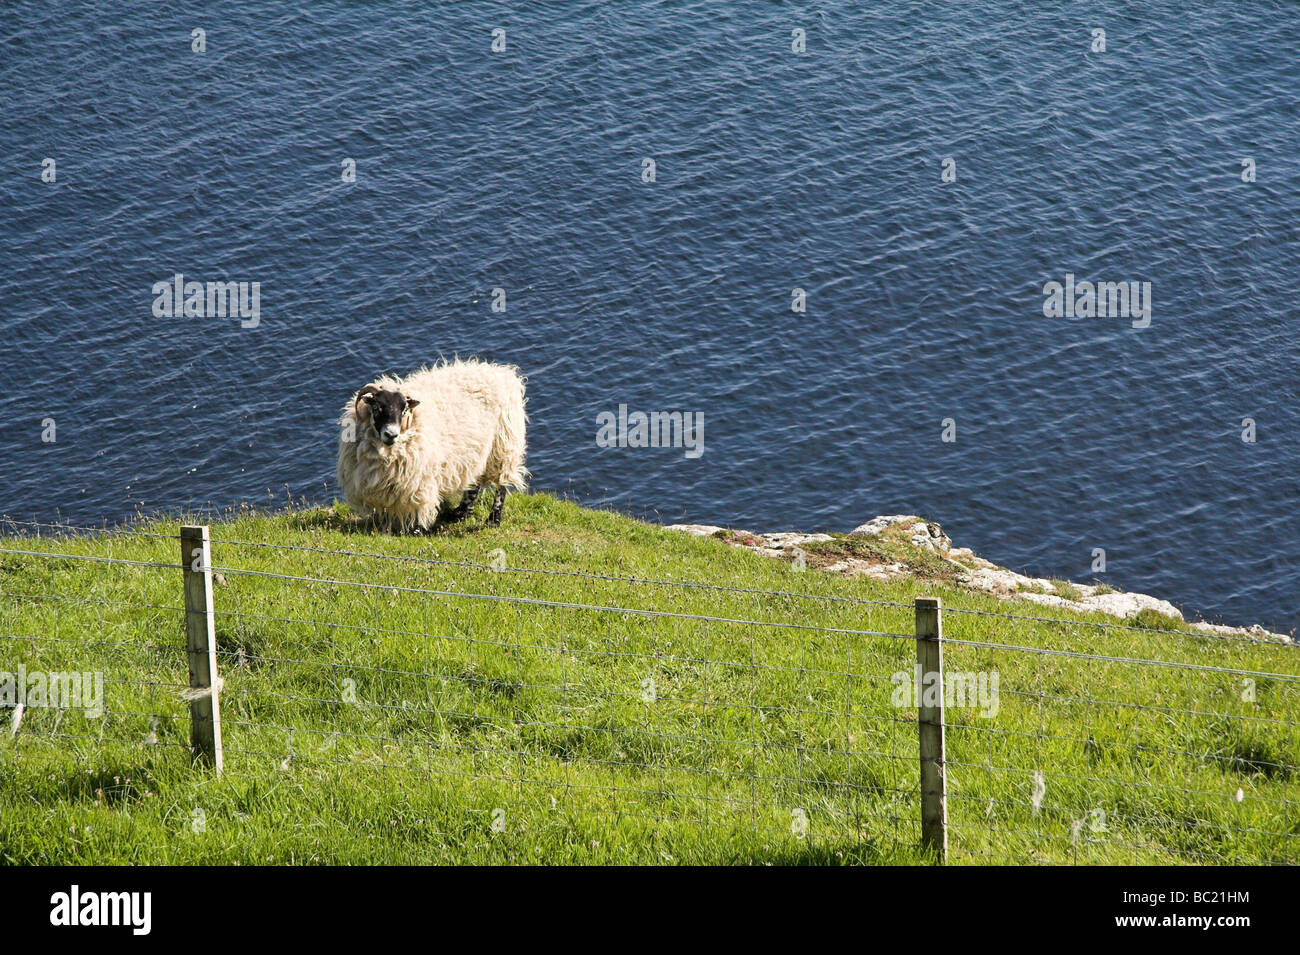 Sheep on a cliff edge, Isle of Skye, Inner Hebrides, West Coast of Scotland, UK Stock Photo